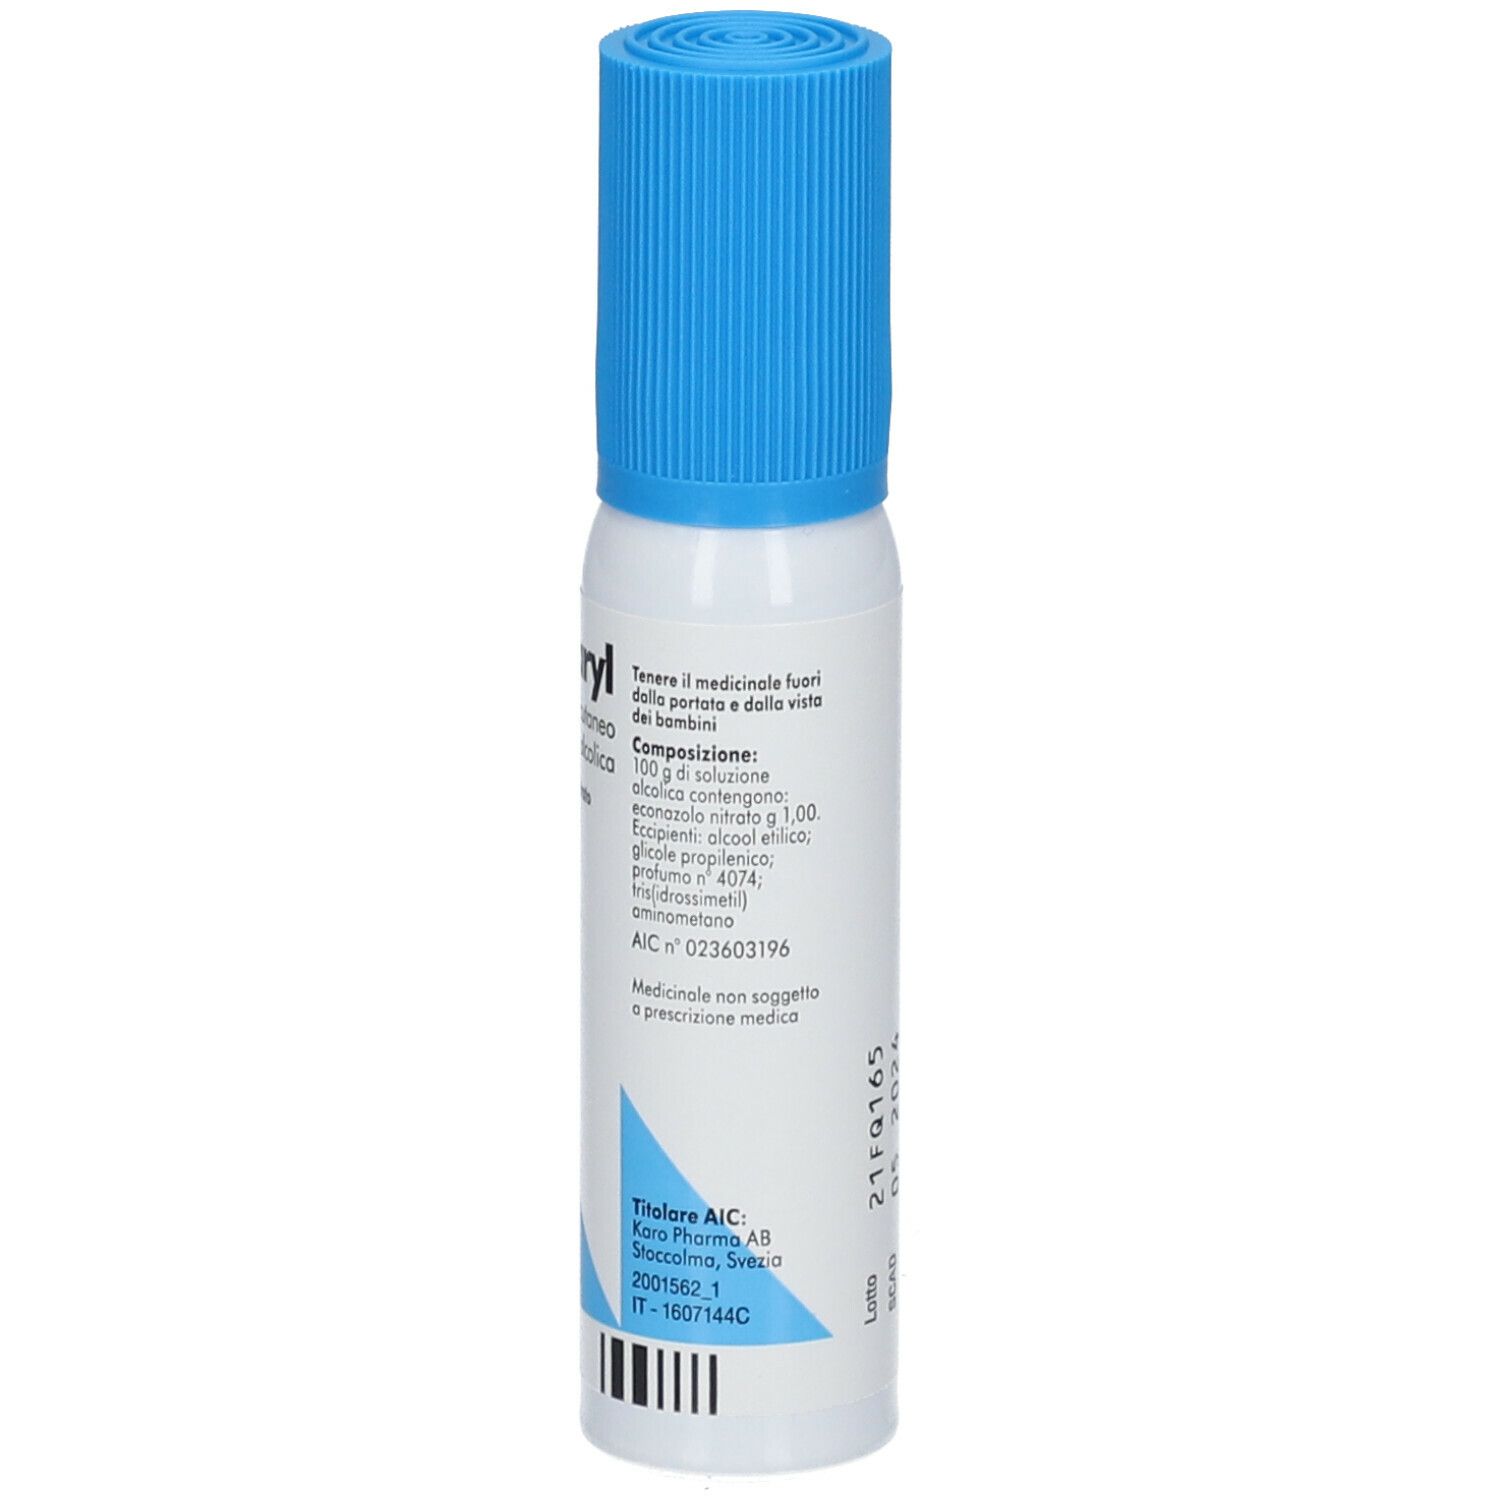 PEVARYL® SOLUZIONE CUT 30 ml Spray